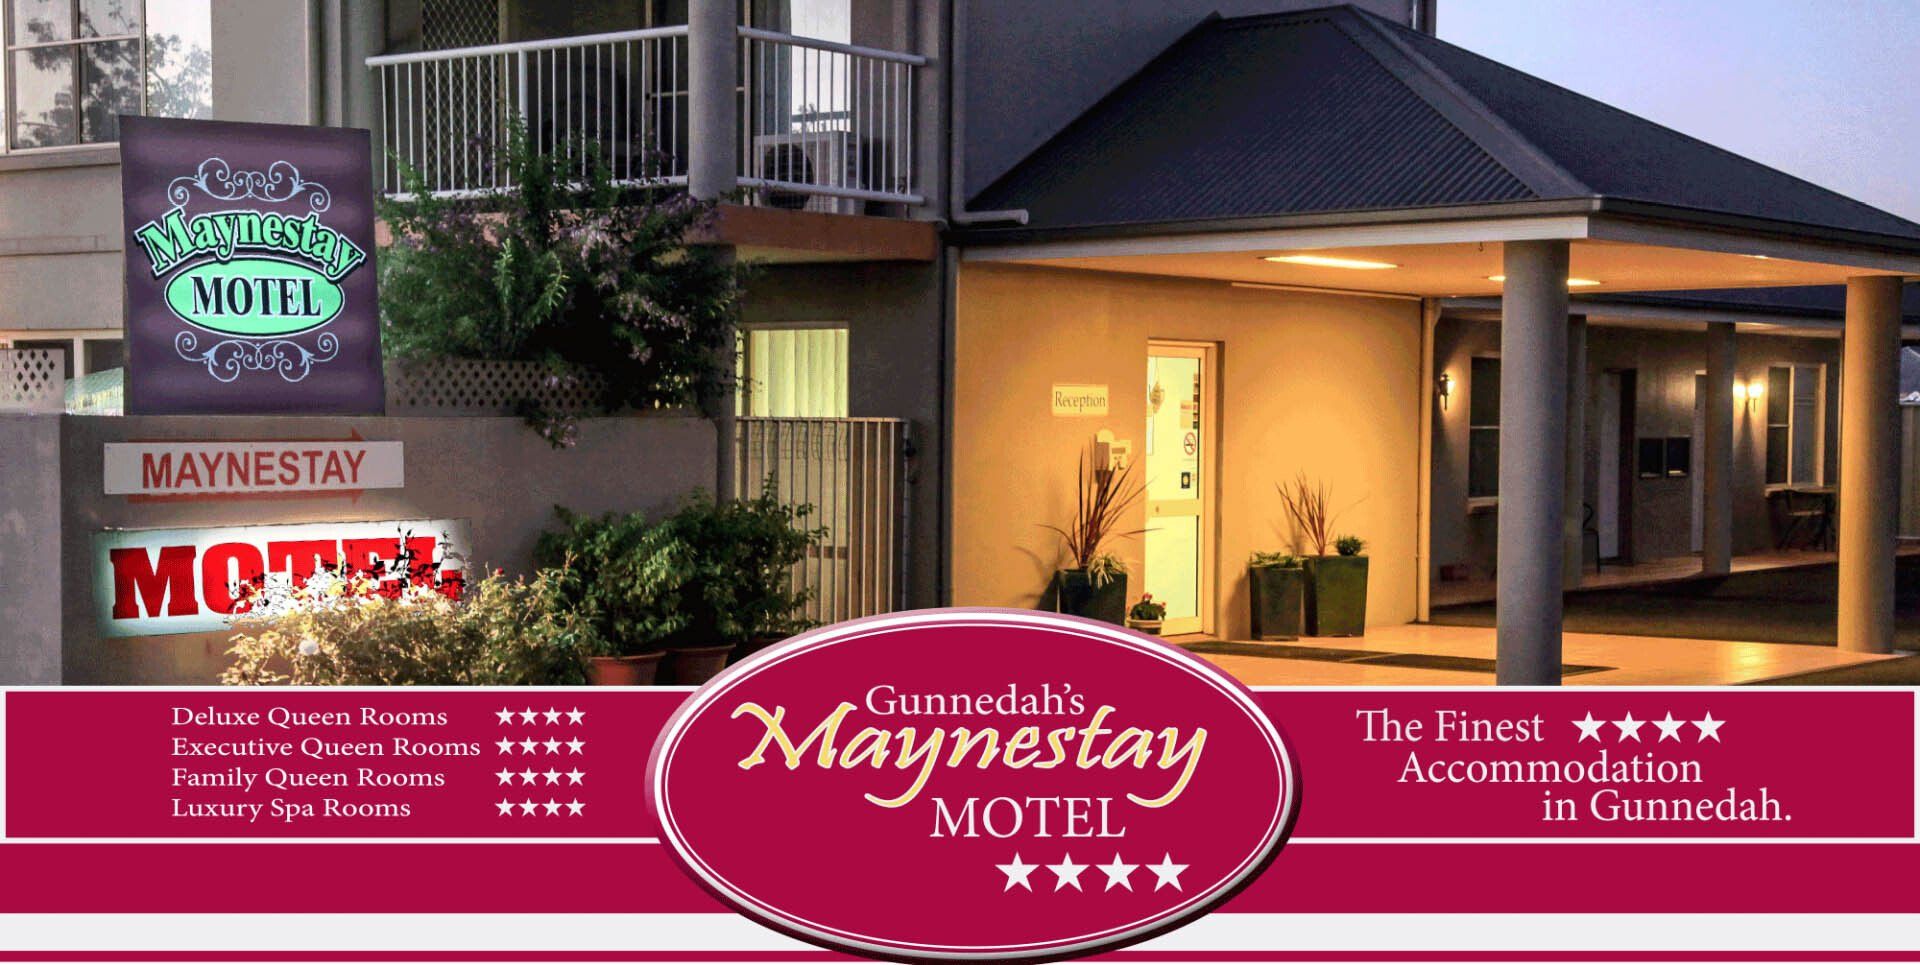 Your home away from home in Gunnedah | Gunnedah's Maynestay Motel